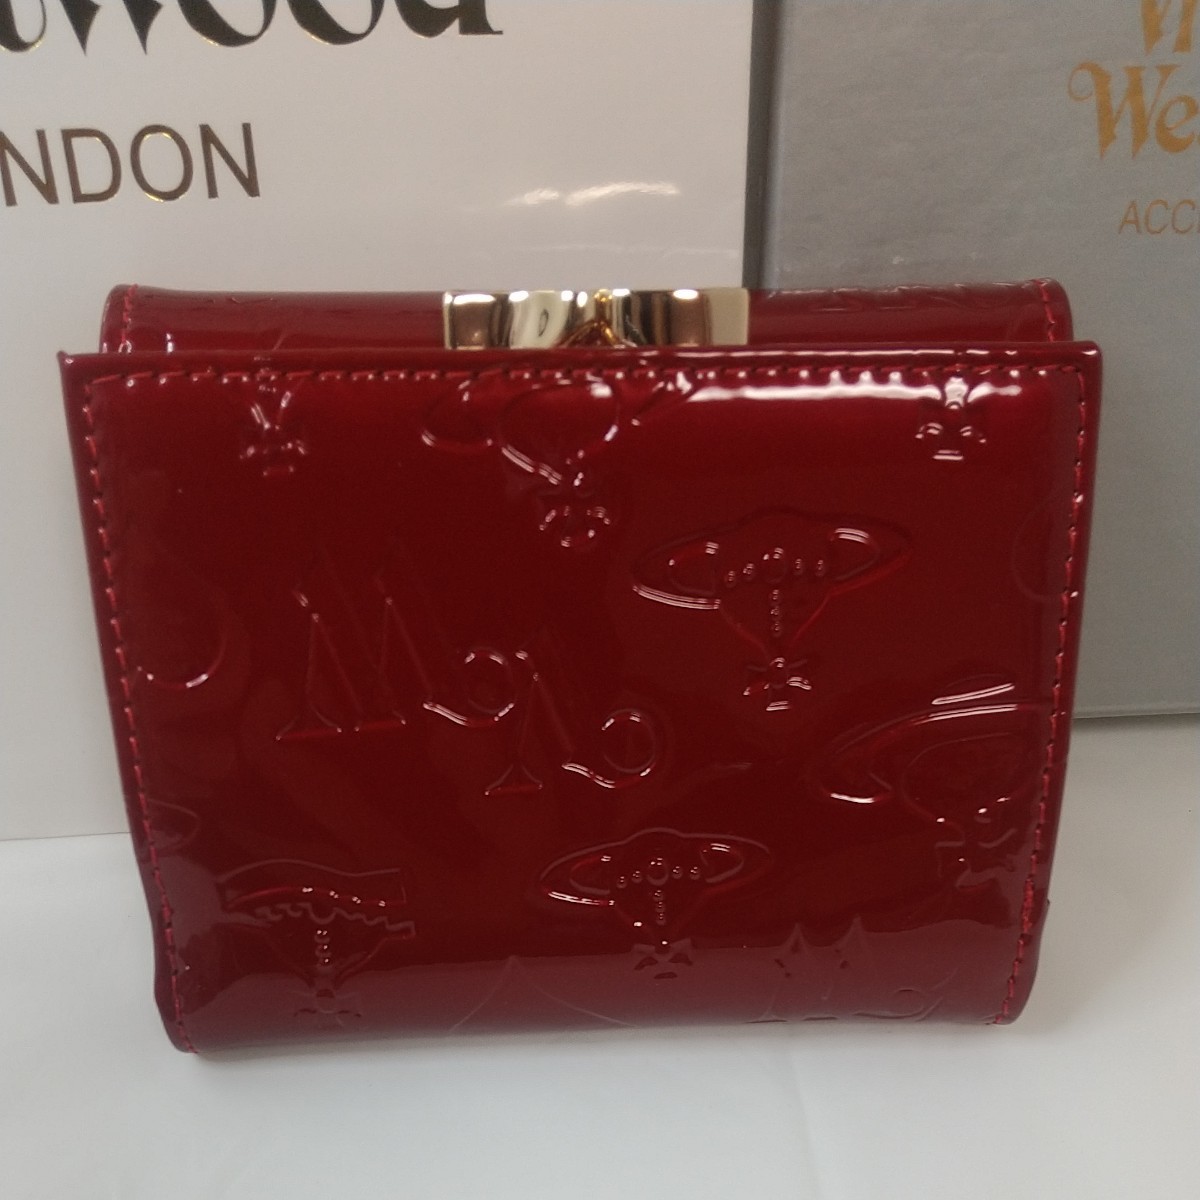 ヴィヴィアン ウエストウッド Vivienne Westwood 3つ折り財布 エナメルレッド かわいい財布レディース 新品未使用